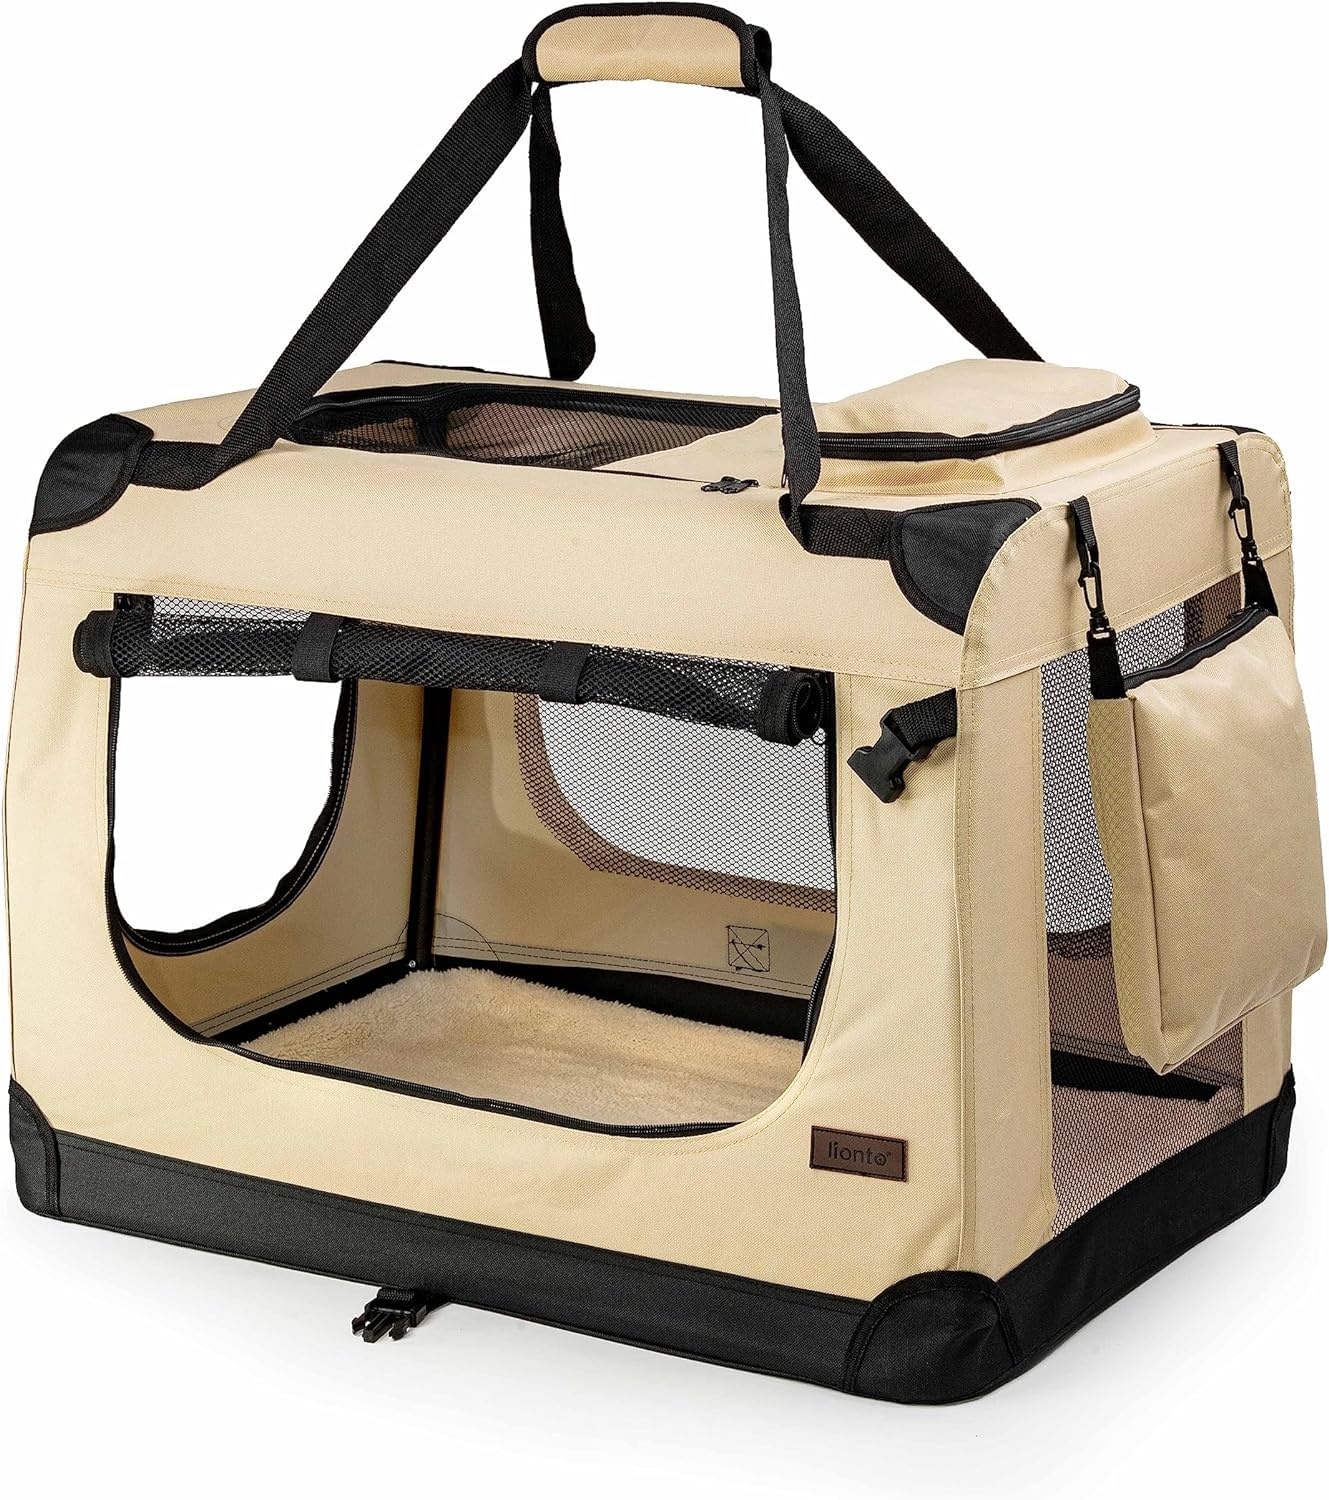 lionto Hundetransportbox faltbar für Reise & Auto, 50x34x36 cm, stabile Transportbox mit Tragegriffen & Decke für Katzen & Hunde bis 10 kg, robuste Hundebox aus Stoff für klein & groß, beige